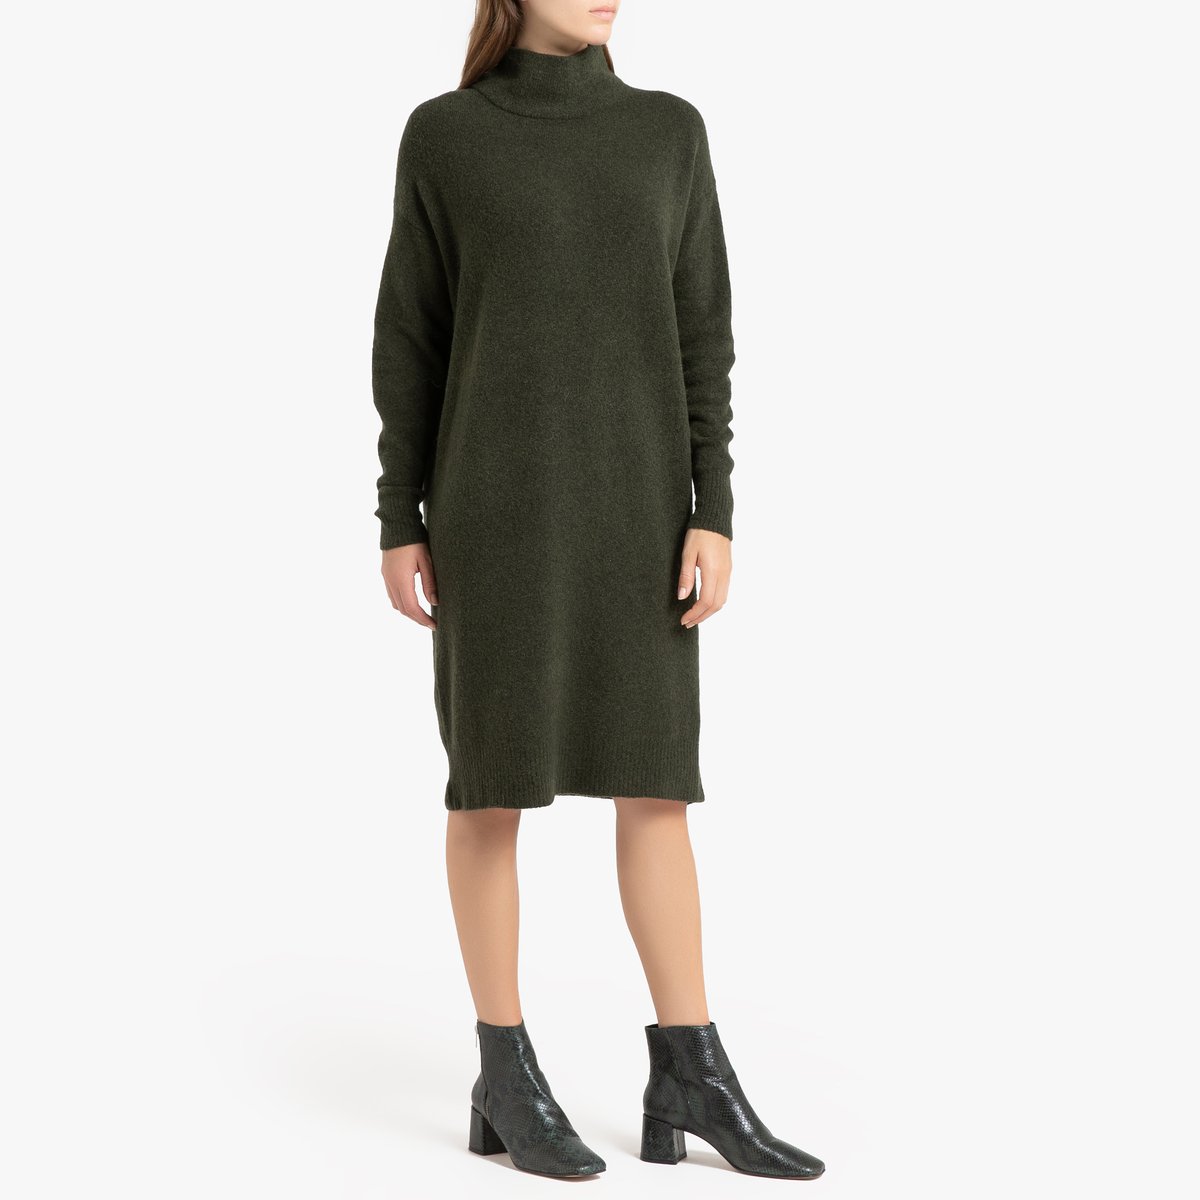 Платье-пуловер La Redoute Длинное с длинными рукавами DAMSVILLE XS/S зеленый, размер XS/S Длинное с длинными рукавами DAMSVILLE XS/S зеленый - фото 2